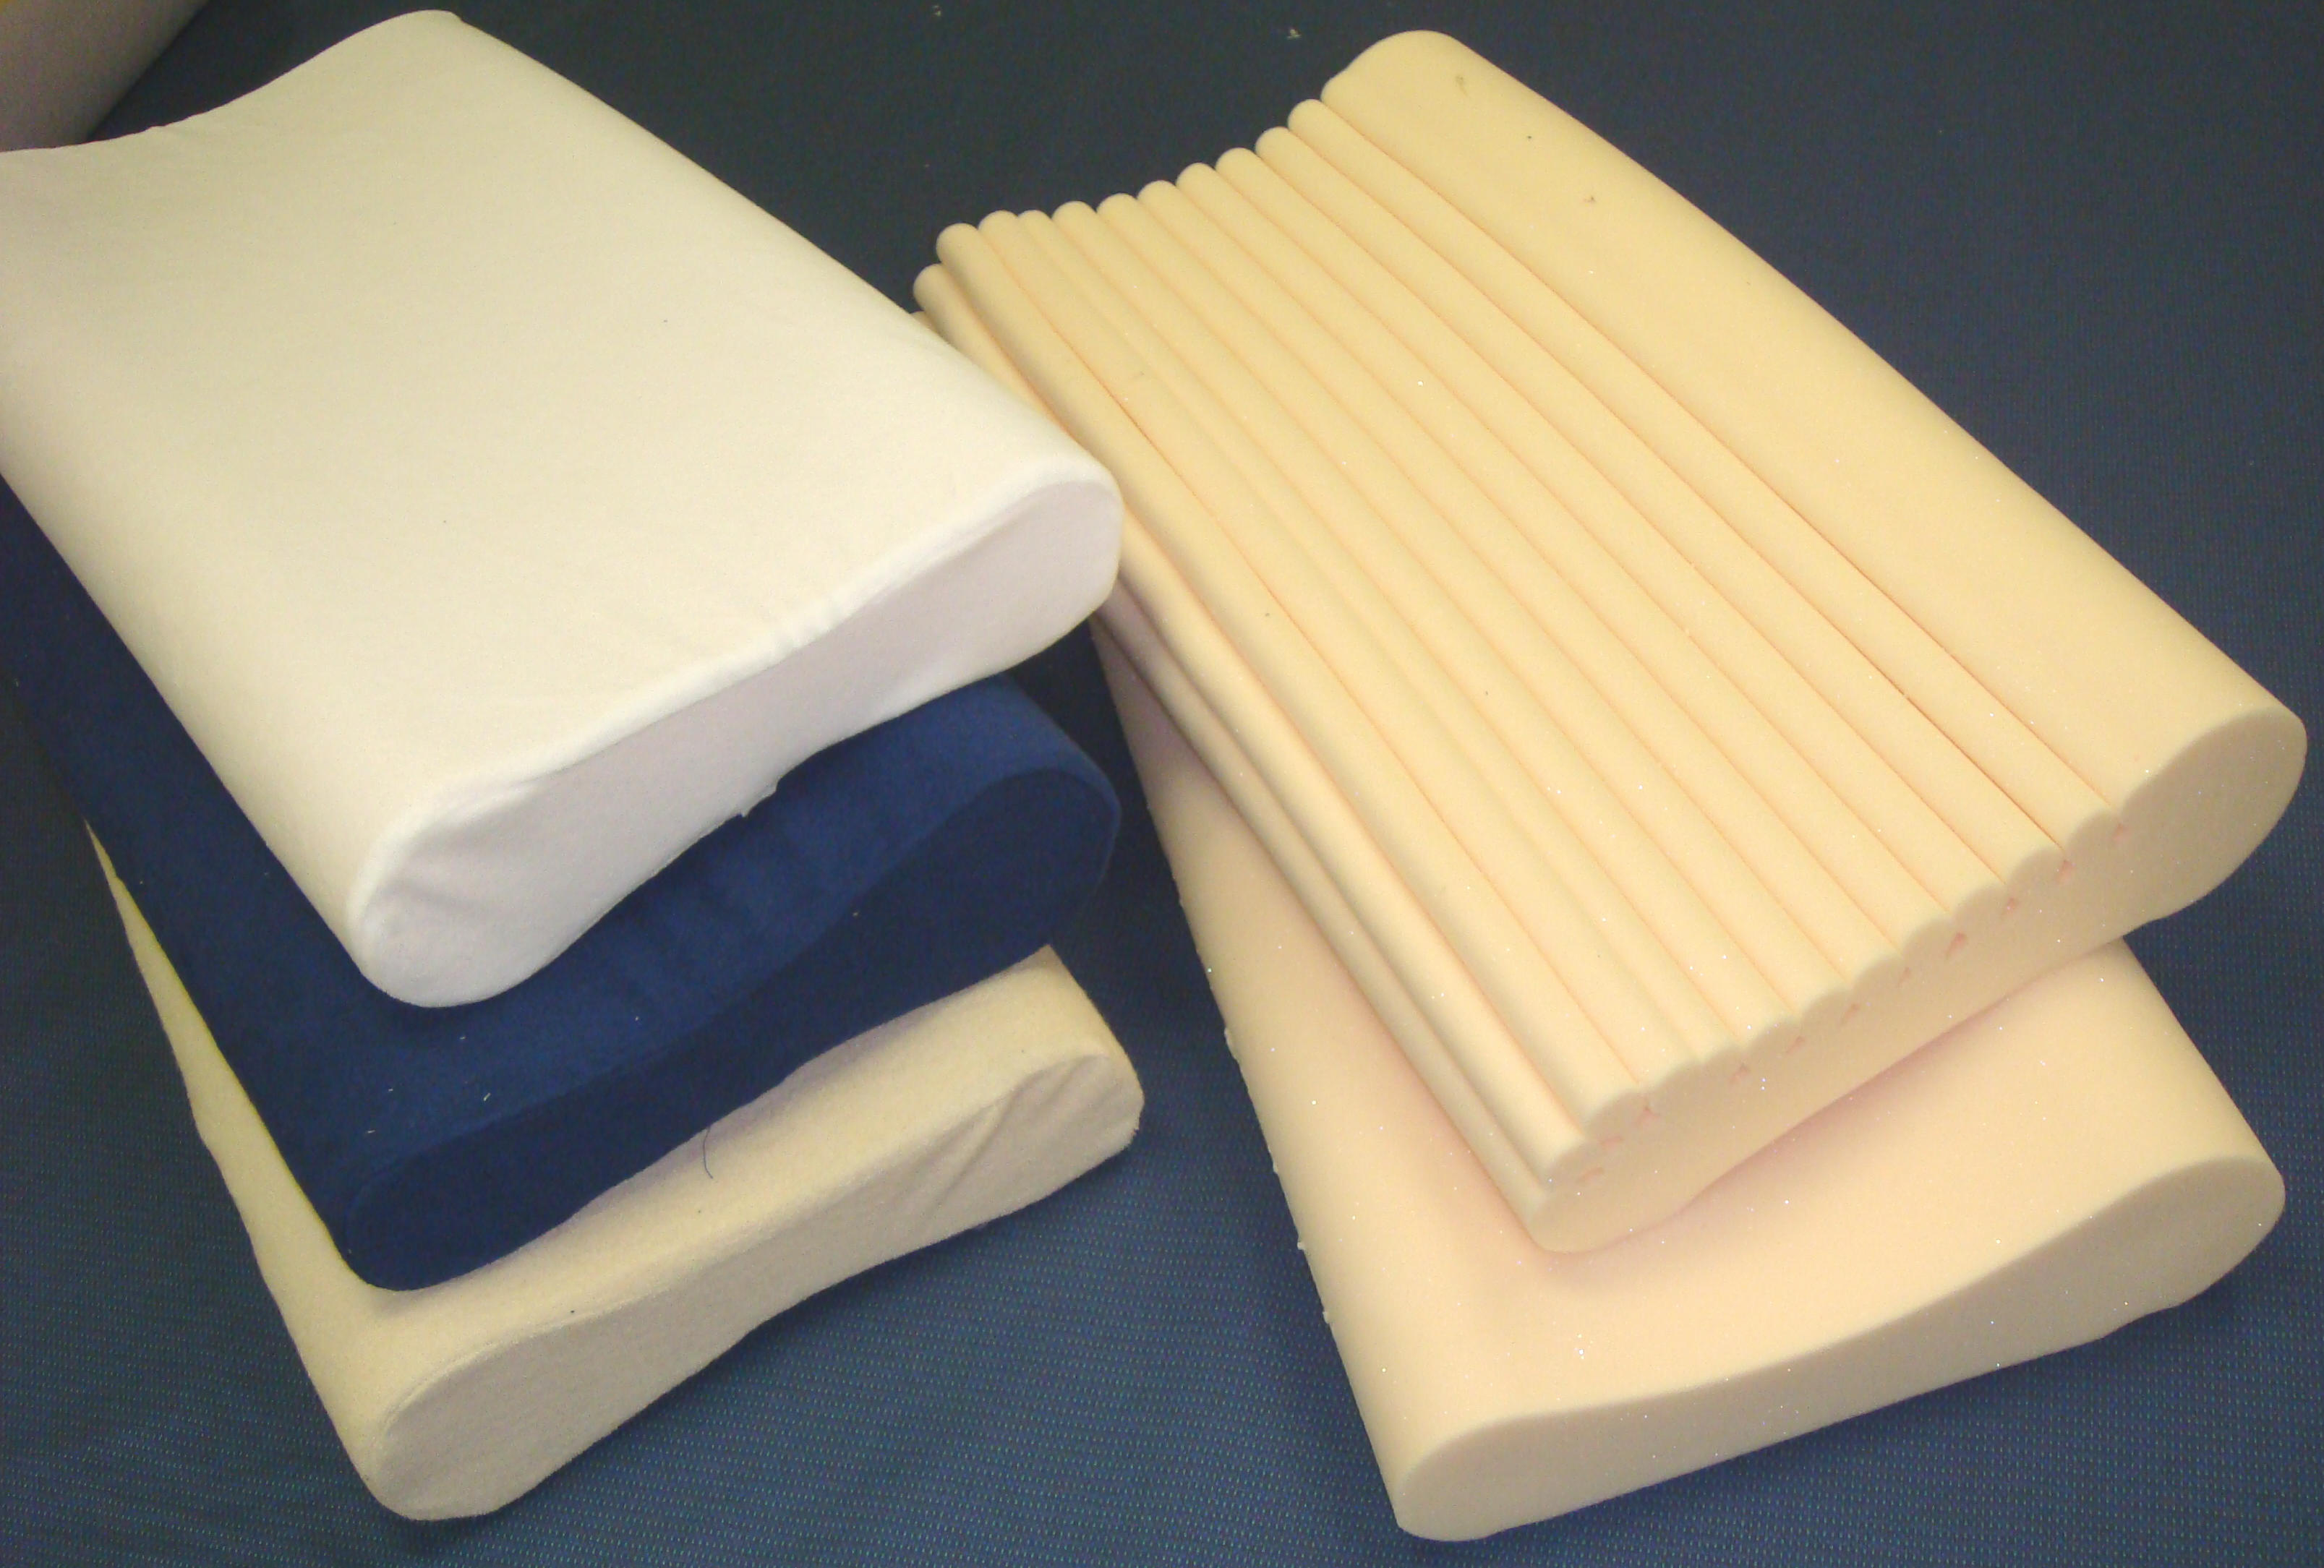 memory foam mattress use a pillows